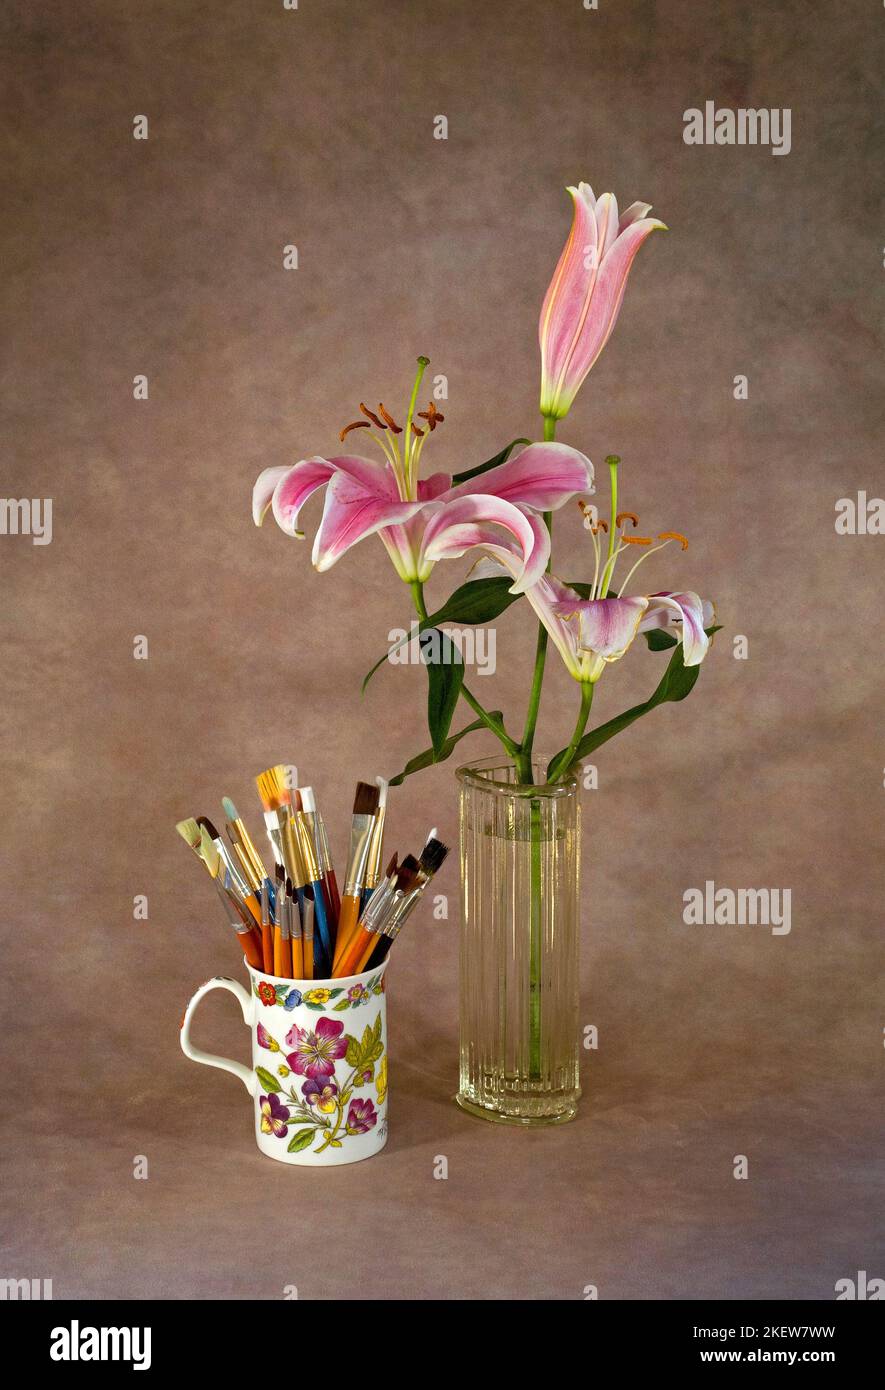 Una taza llena de pinceles de pintura de artista y un precioso ramo de lirios Stargazer en un jarrón. Foto de stock